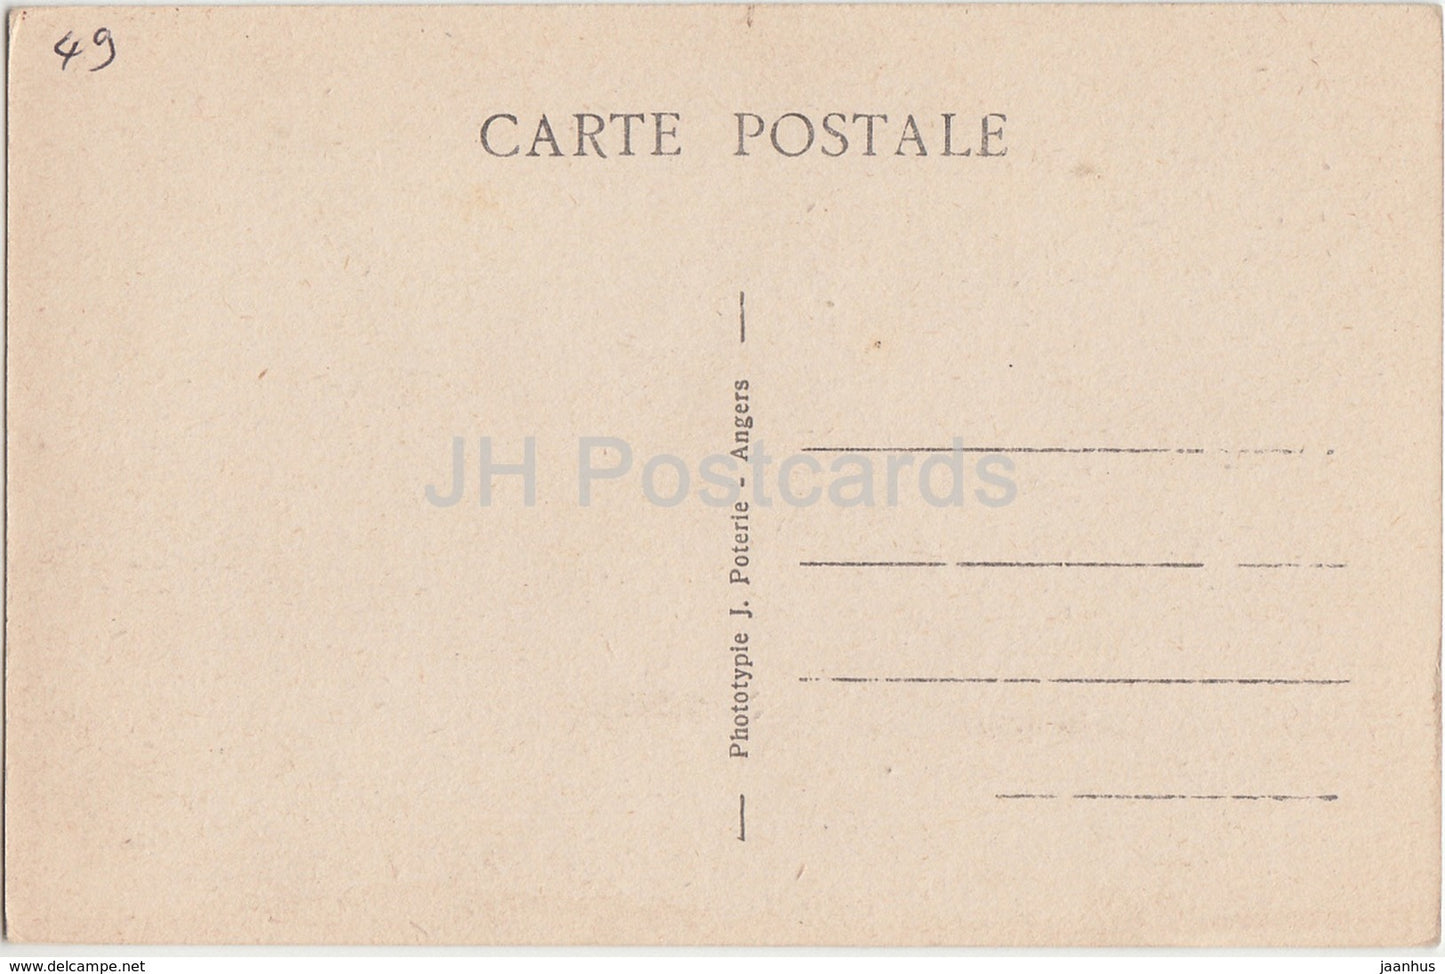 Bauge - Le Chateau - château - carte postale ancienne - France - inutilisée